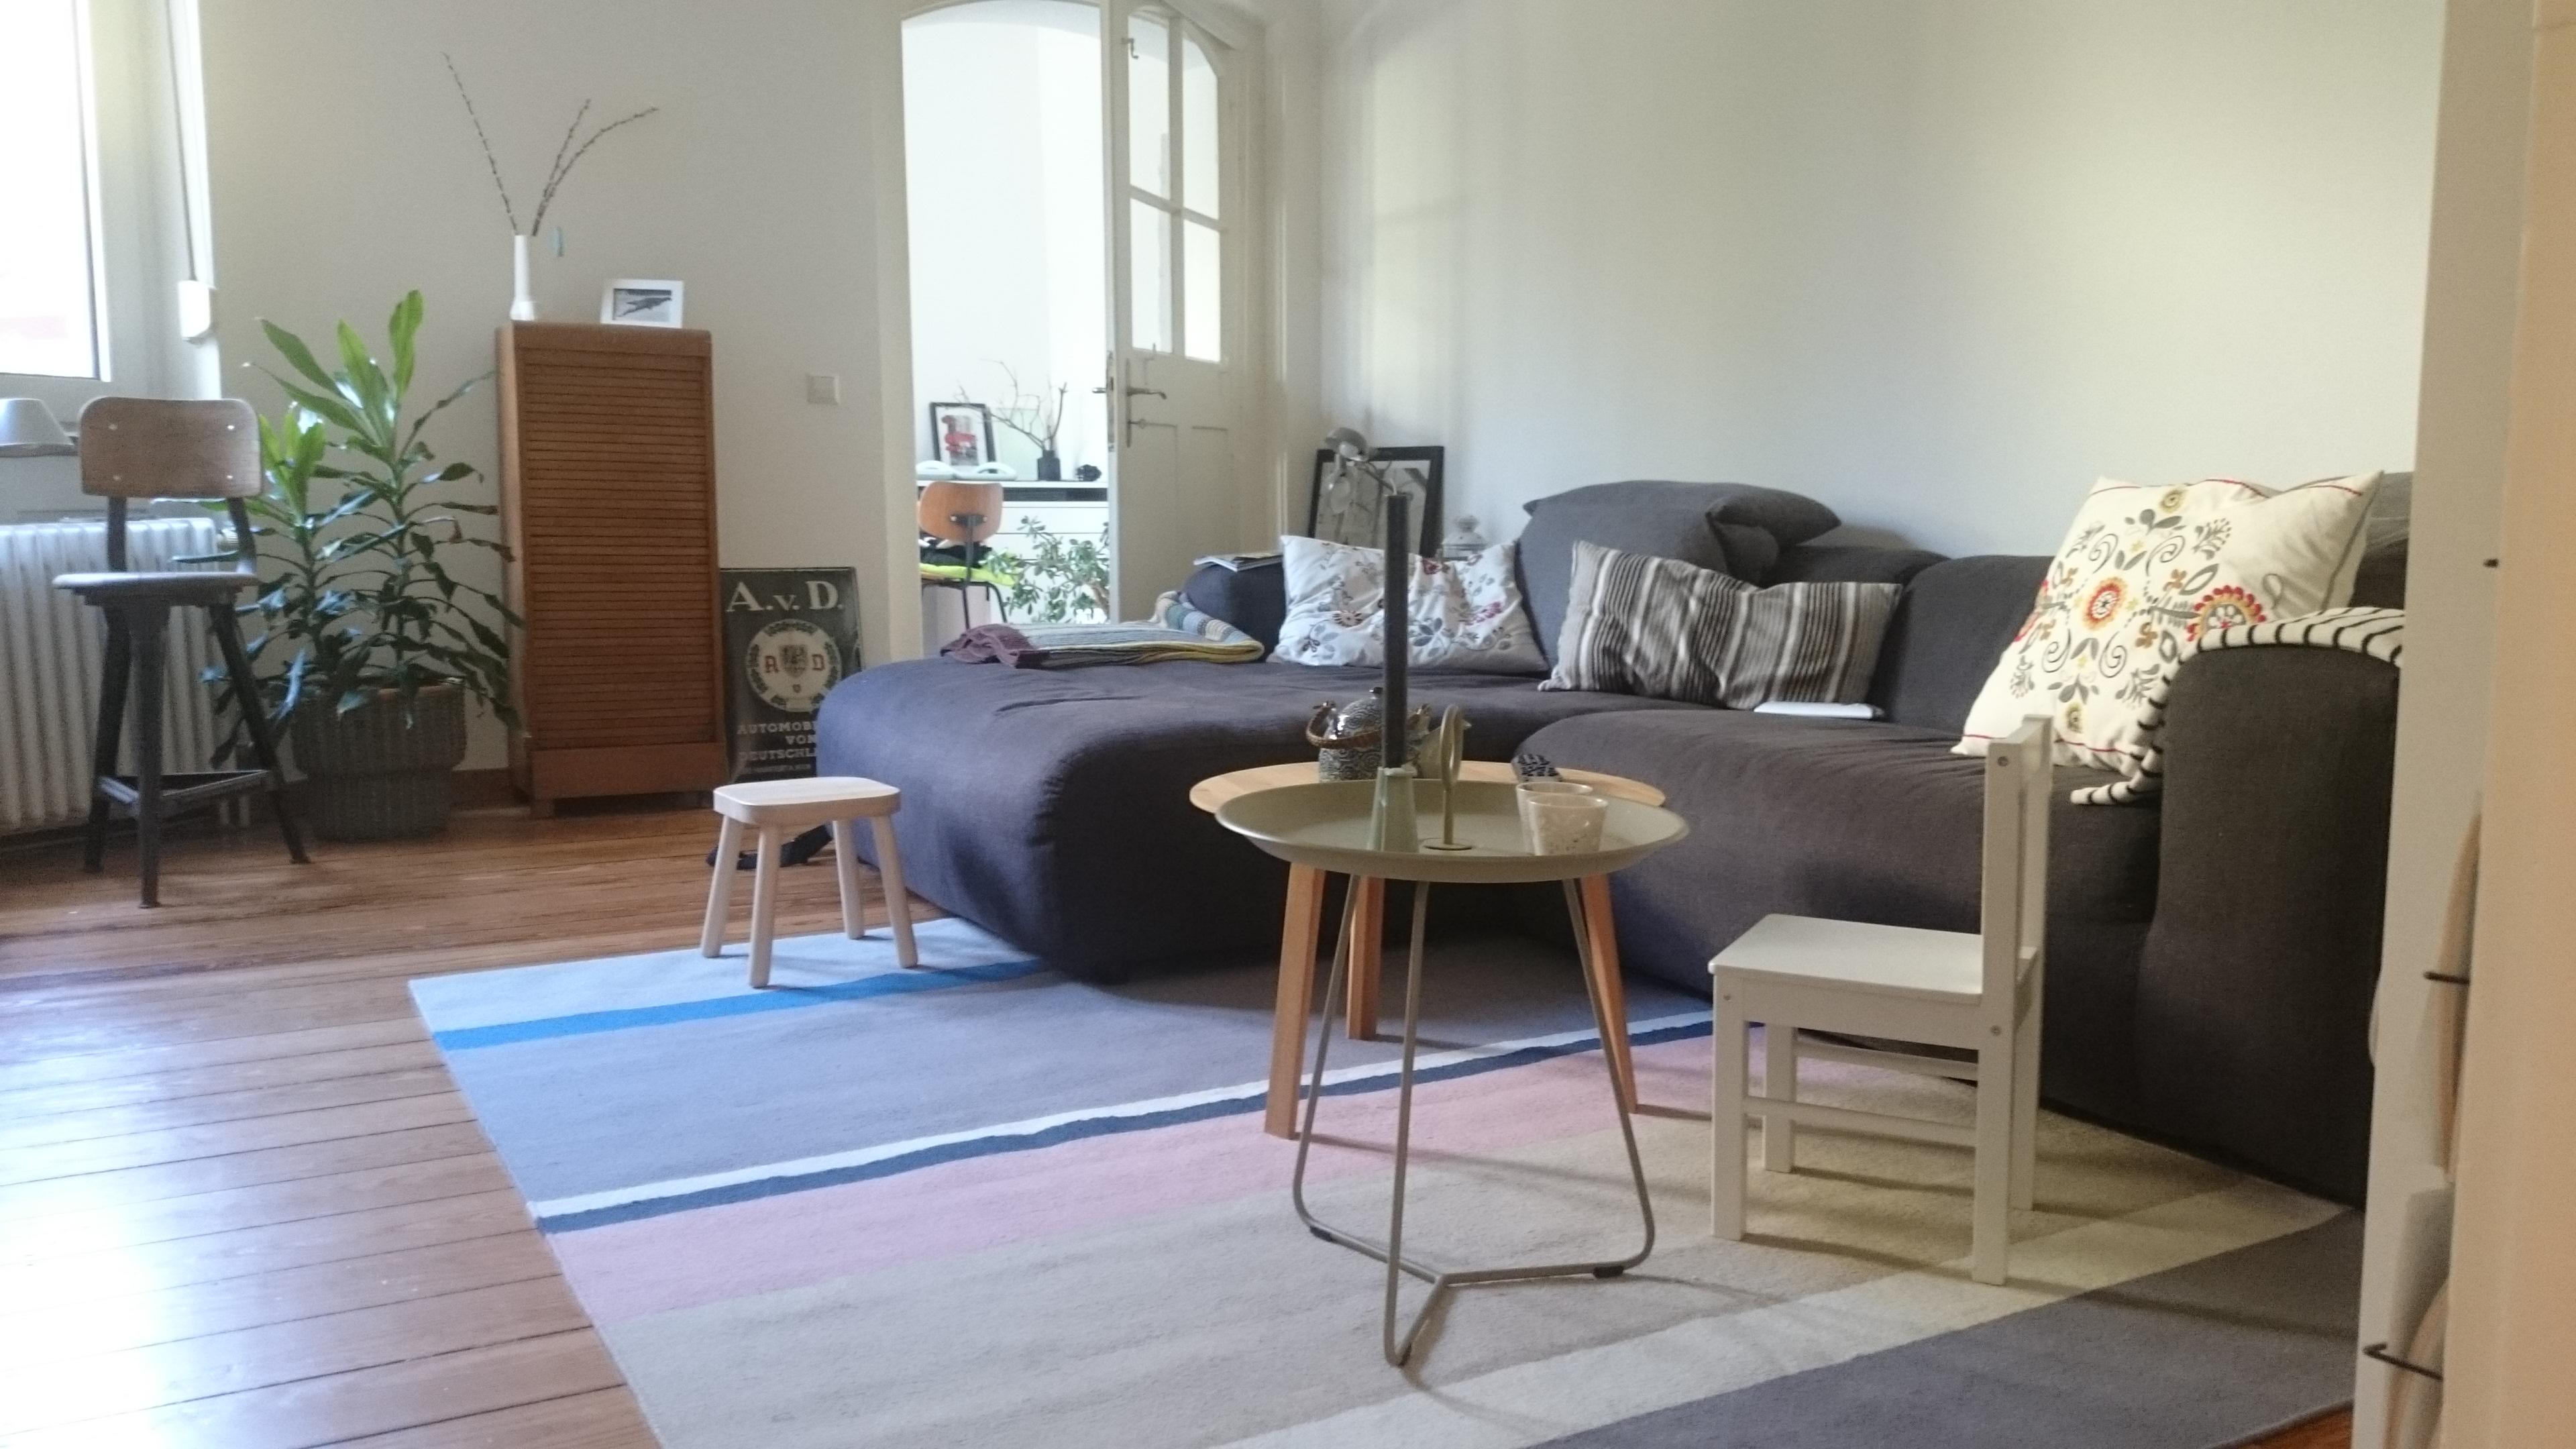 neuer ikea teppich macht sich gut zum hay tsich <3

#skandistyle #couchliebt